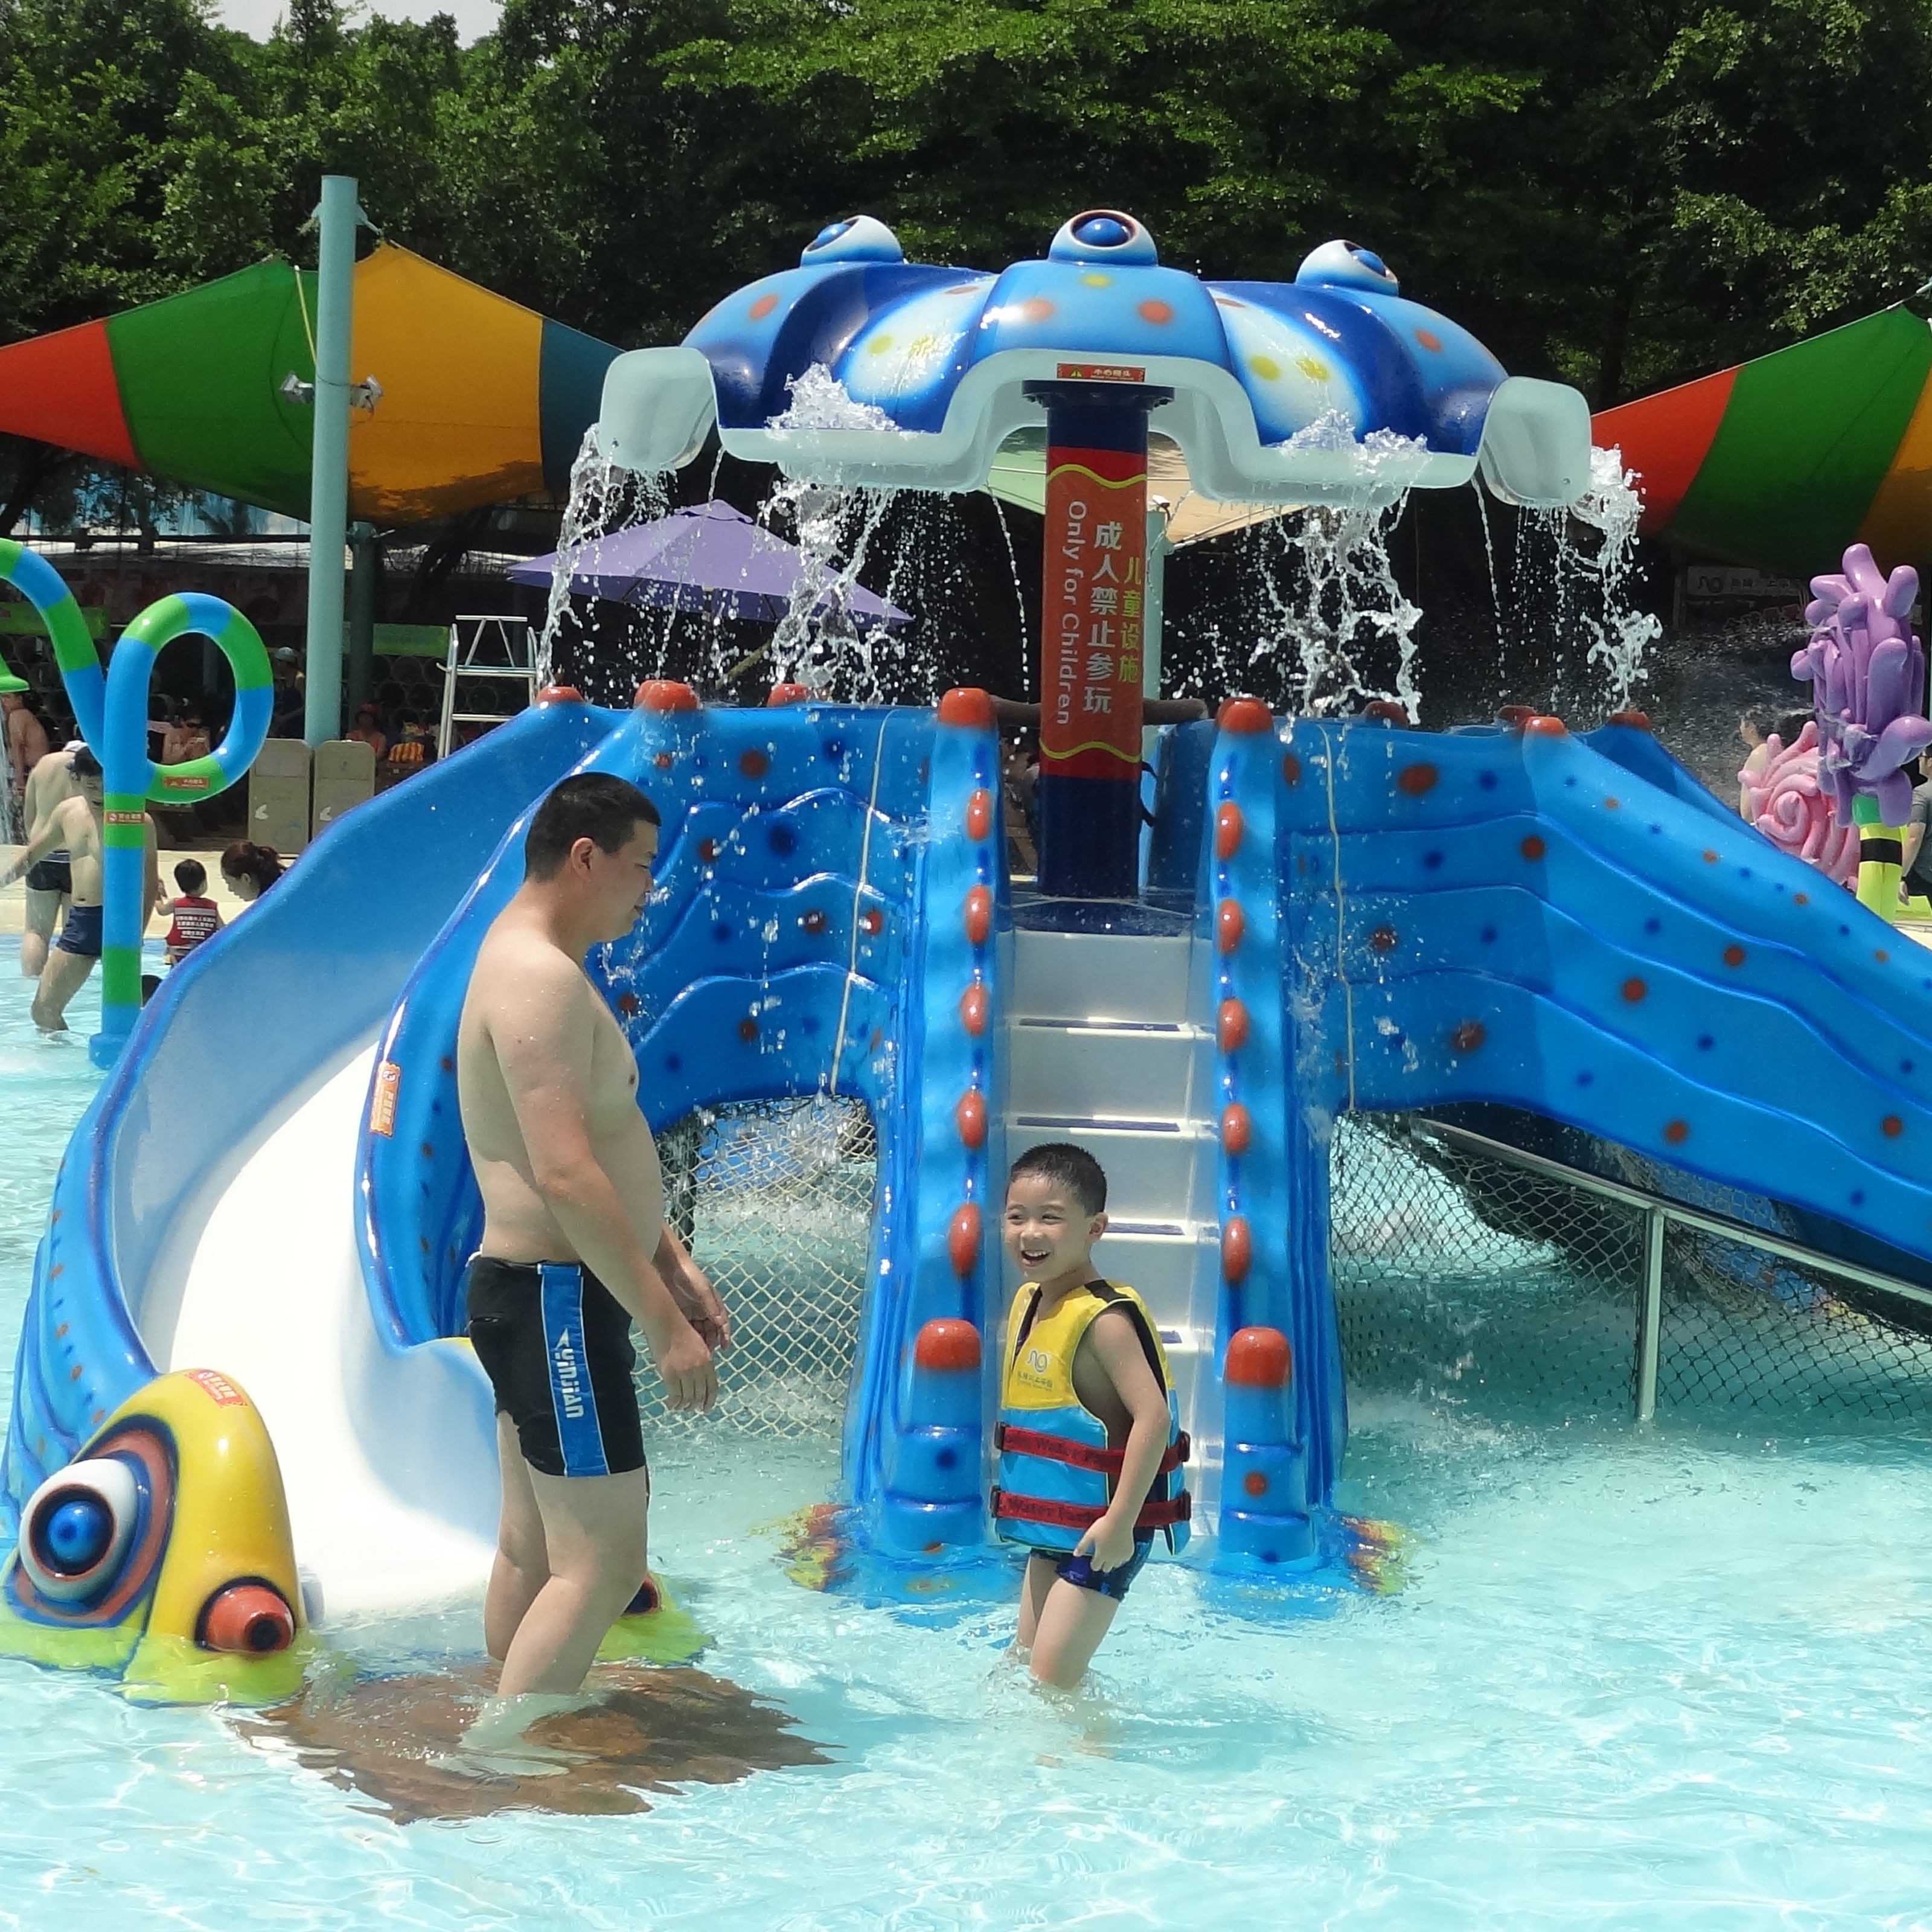 章鱼滑梯 儿童戏水滑梯 水上游乐设备  水上游乐设备厂家  水上乐园设备厂家